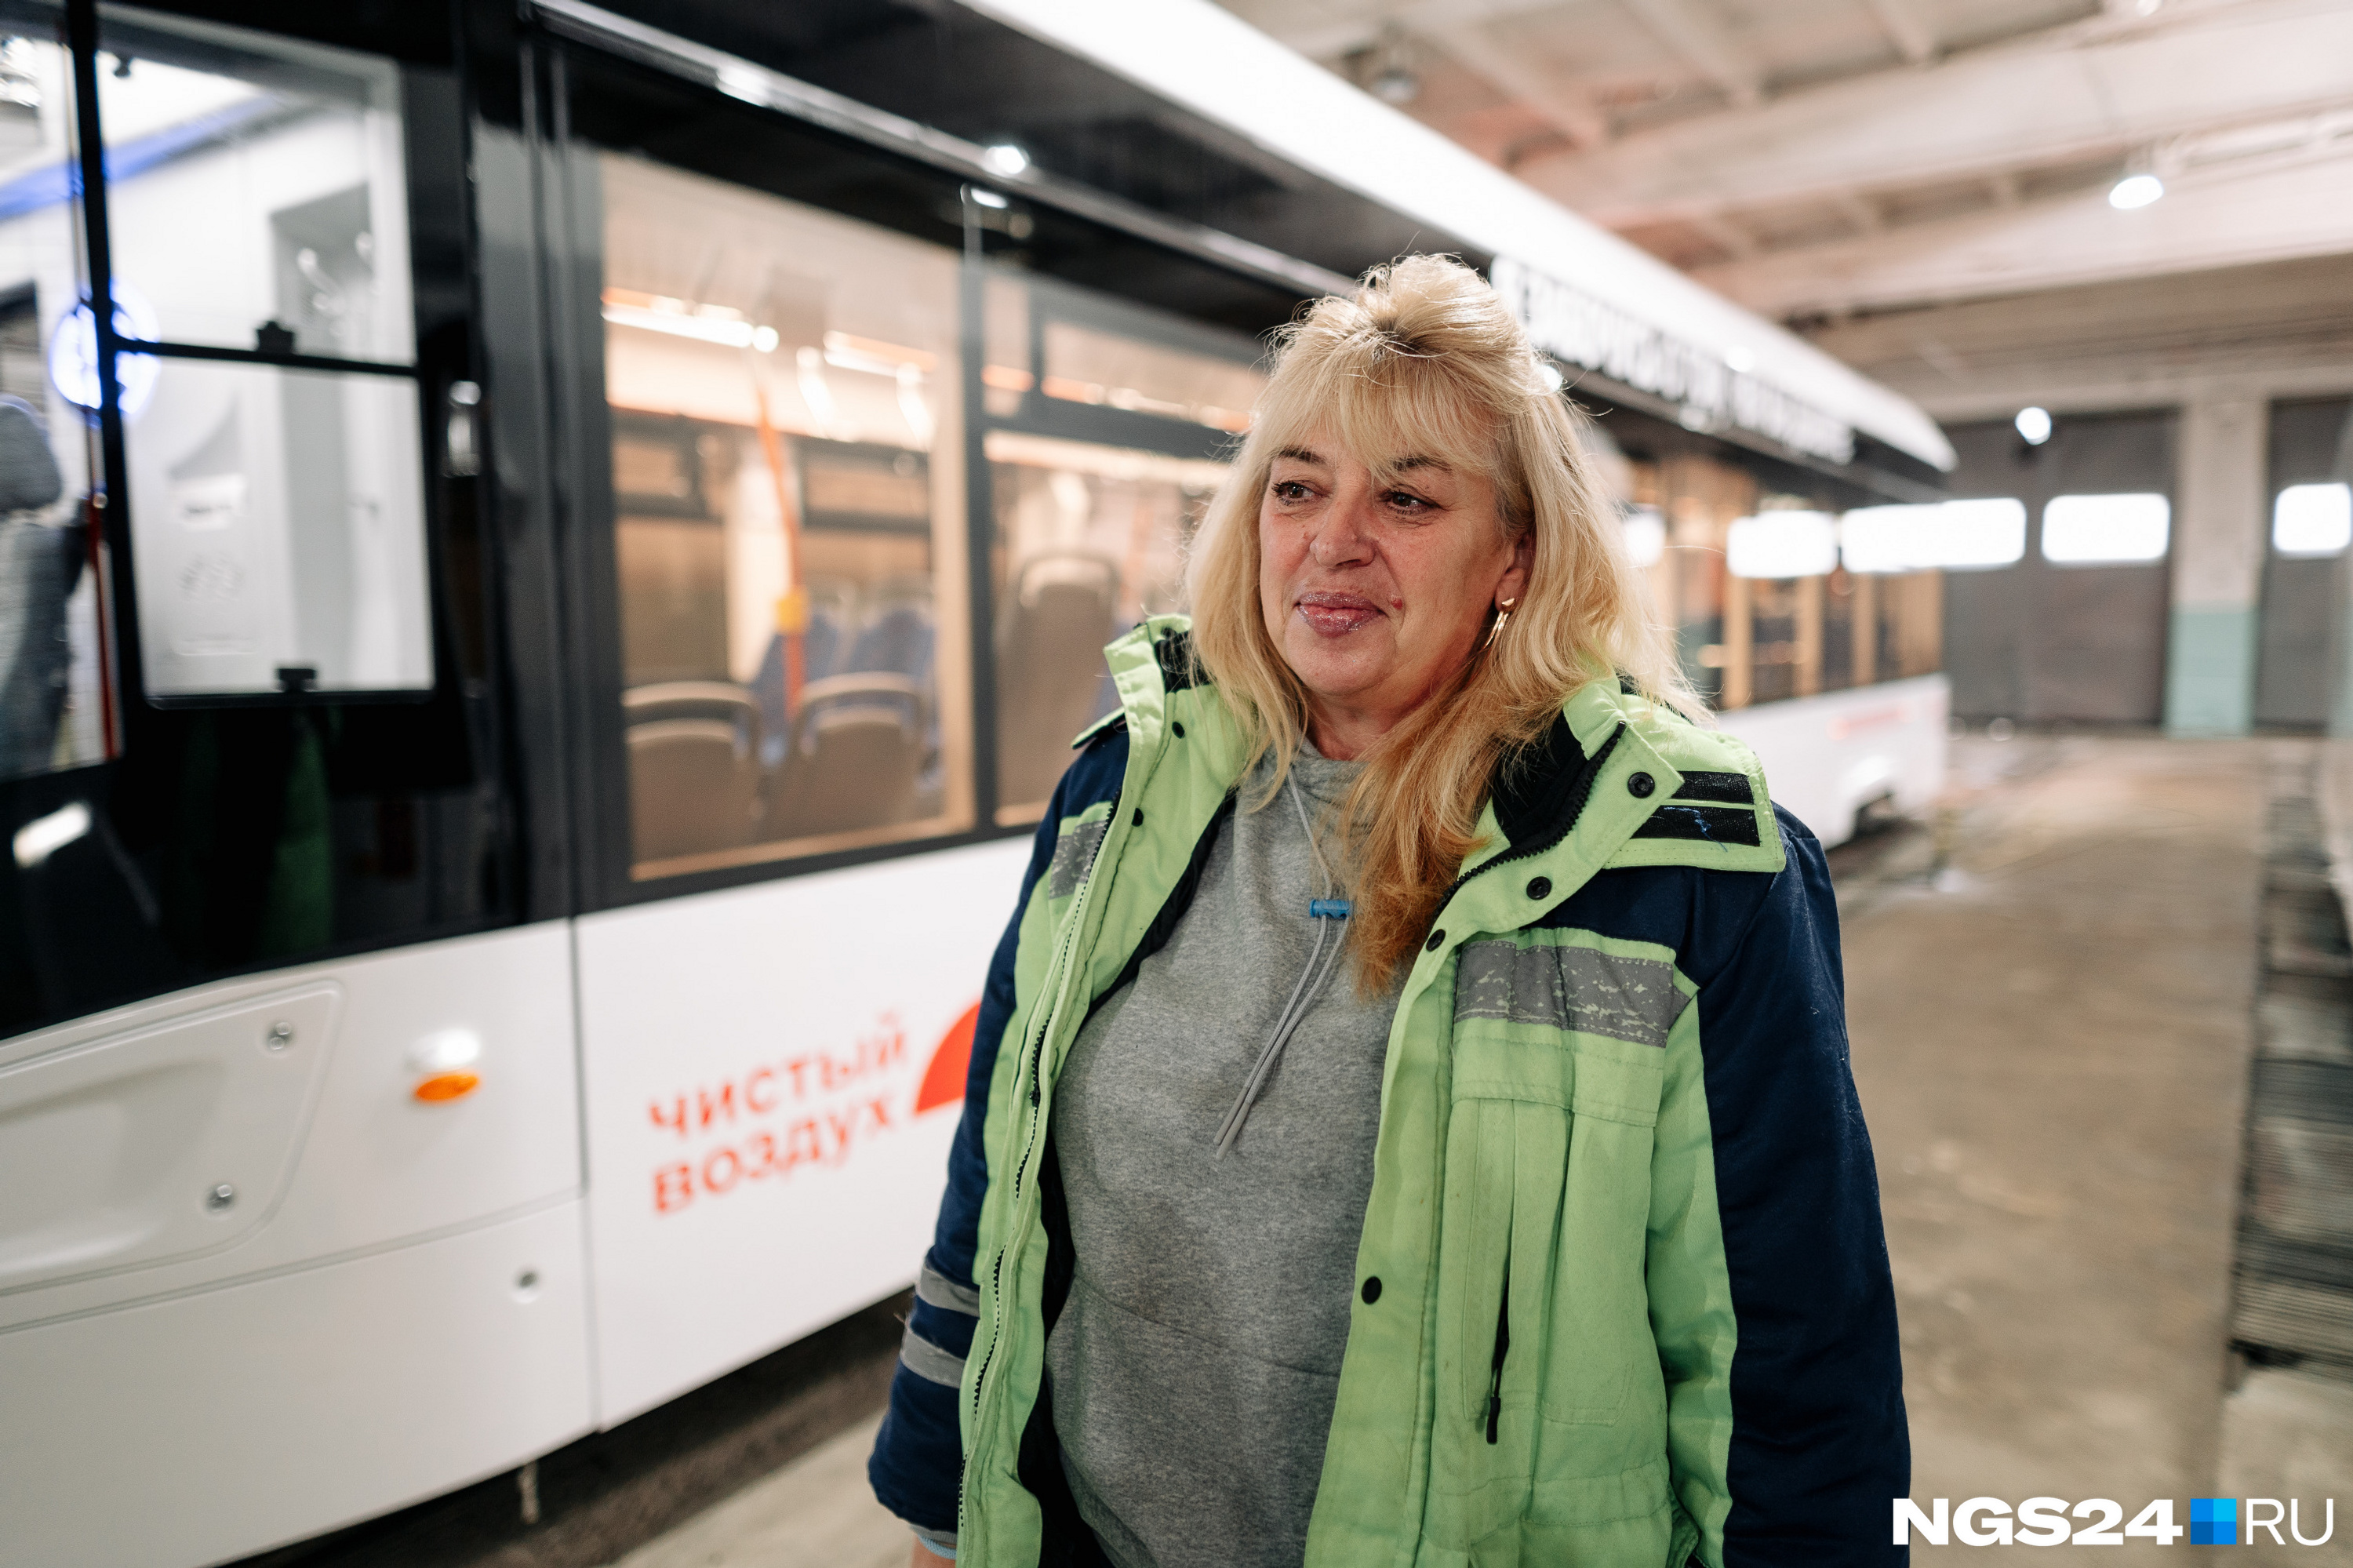 Нина Ивановна в восторге от новых трамваев